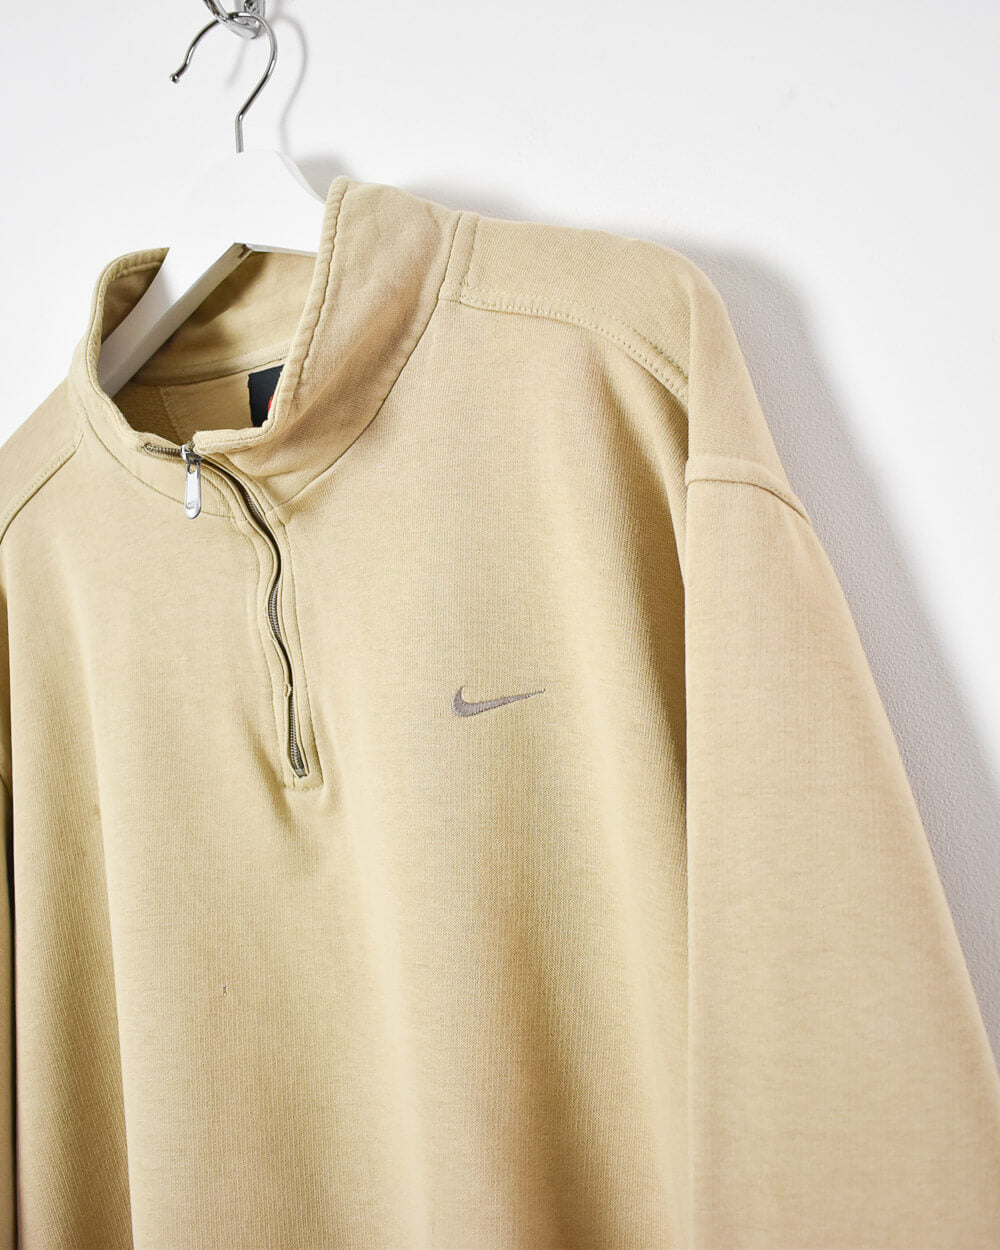 Neutral Nike 1/4 Zip Sweatshirt - Large